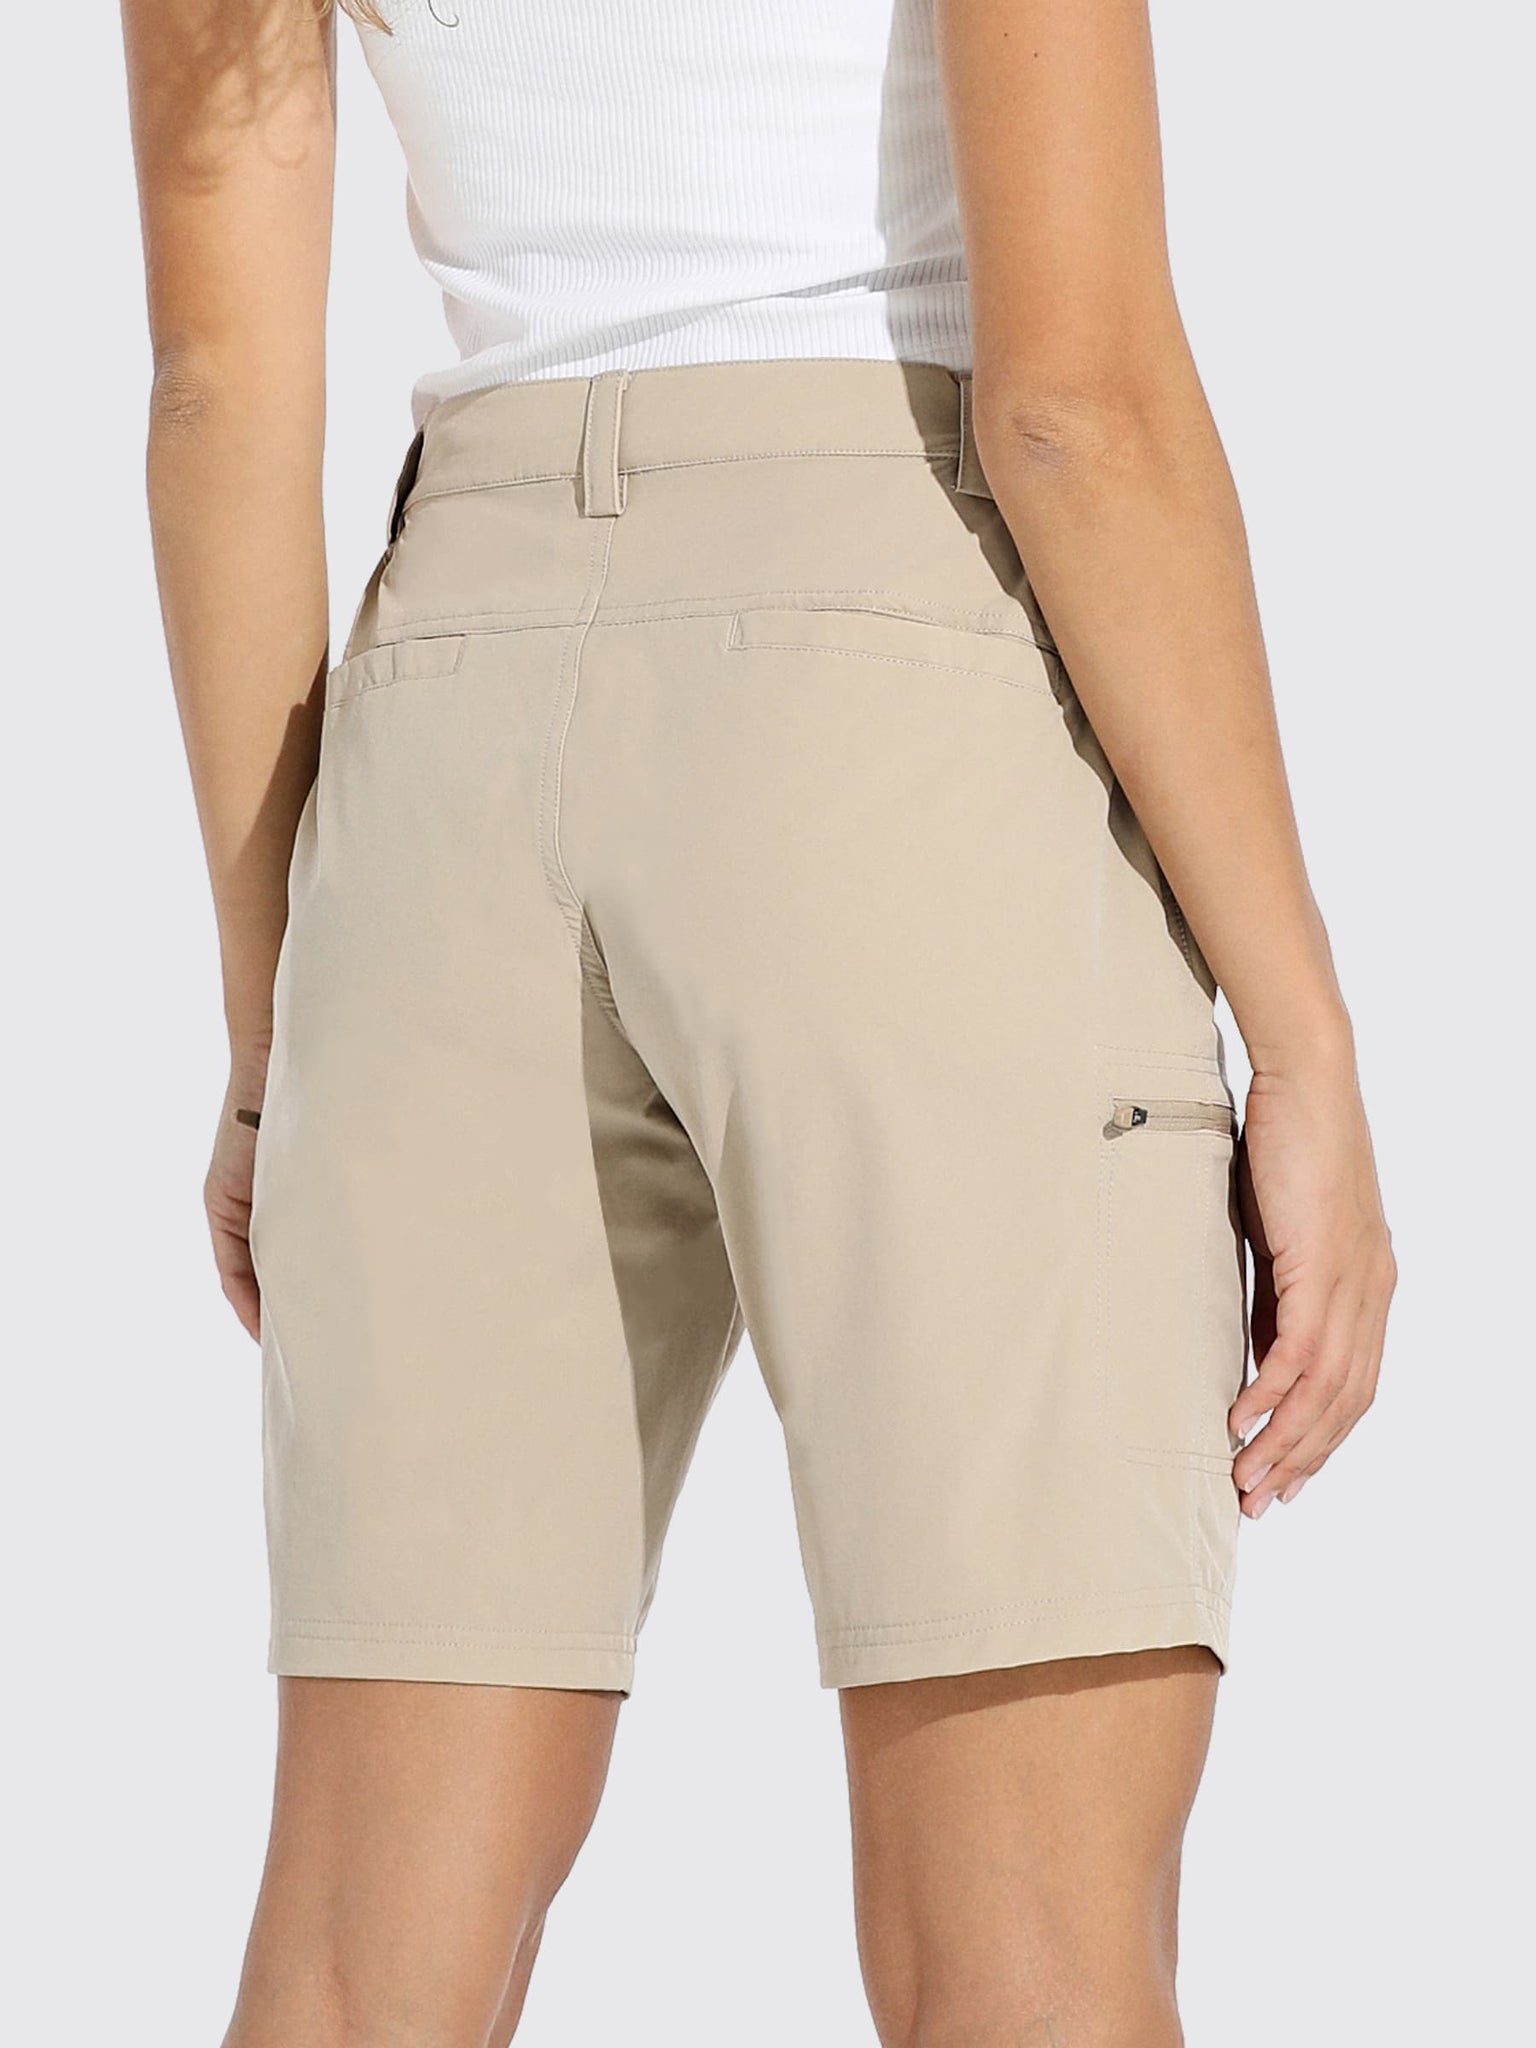 Women's Outdoor Cargo Shorts 10 Inseam_Khaki2